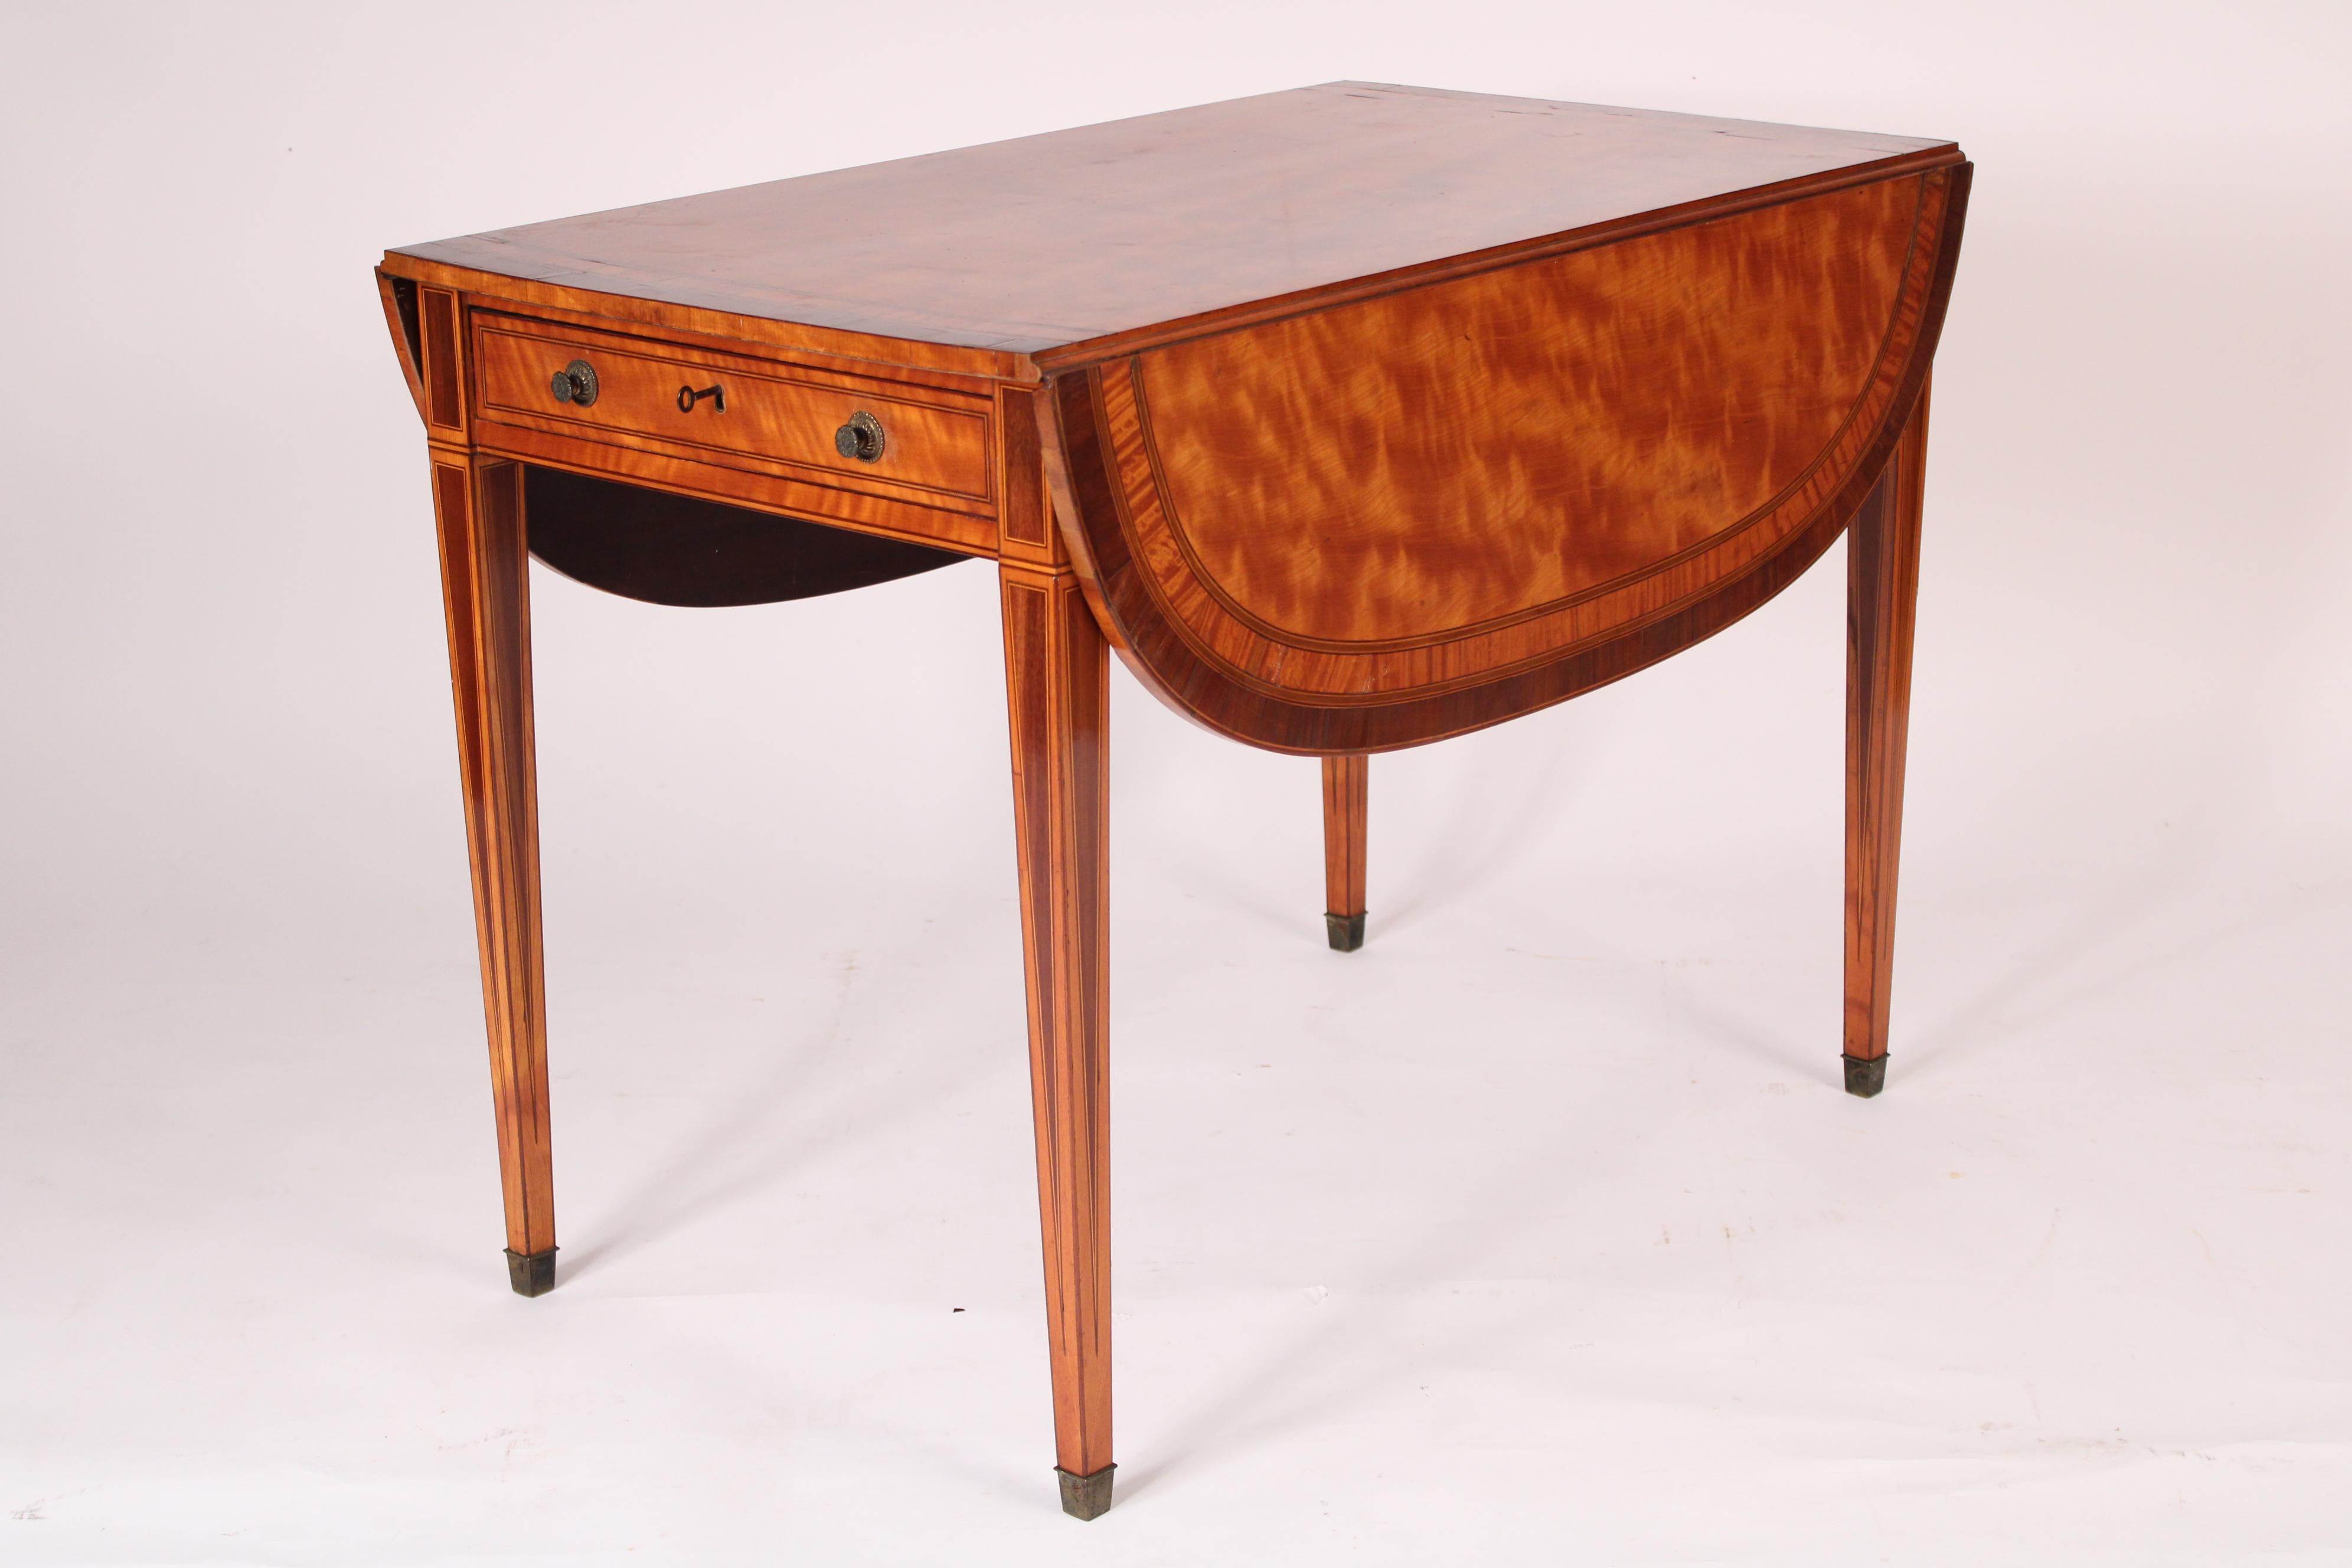 Englischer edwardianischer Pembroke-Tisch aus satiniertem Holz, um 1900. Mit einer rechteckigen Platte aus satiniertem Holz mit Mahagoni-Querbändern und -Zierleisten, 2 D-förmigen Klappblättern, einer Fries-Schublade mit zwei Messingknöpfen, die auf